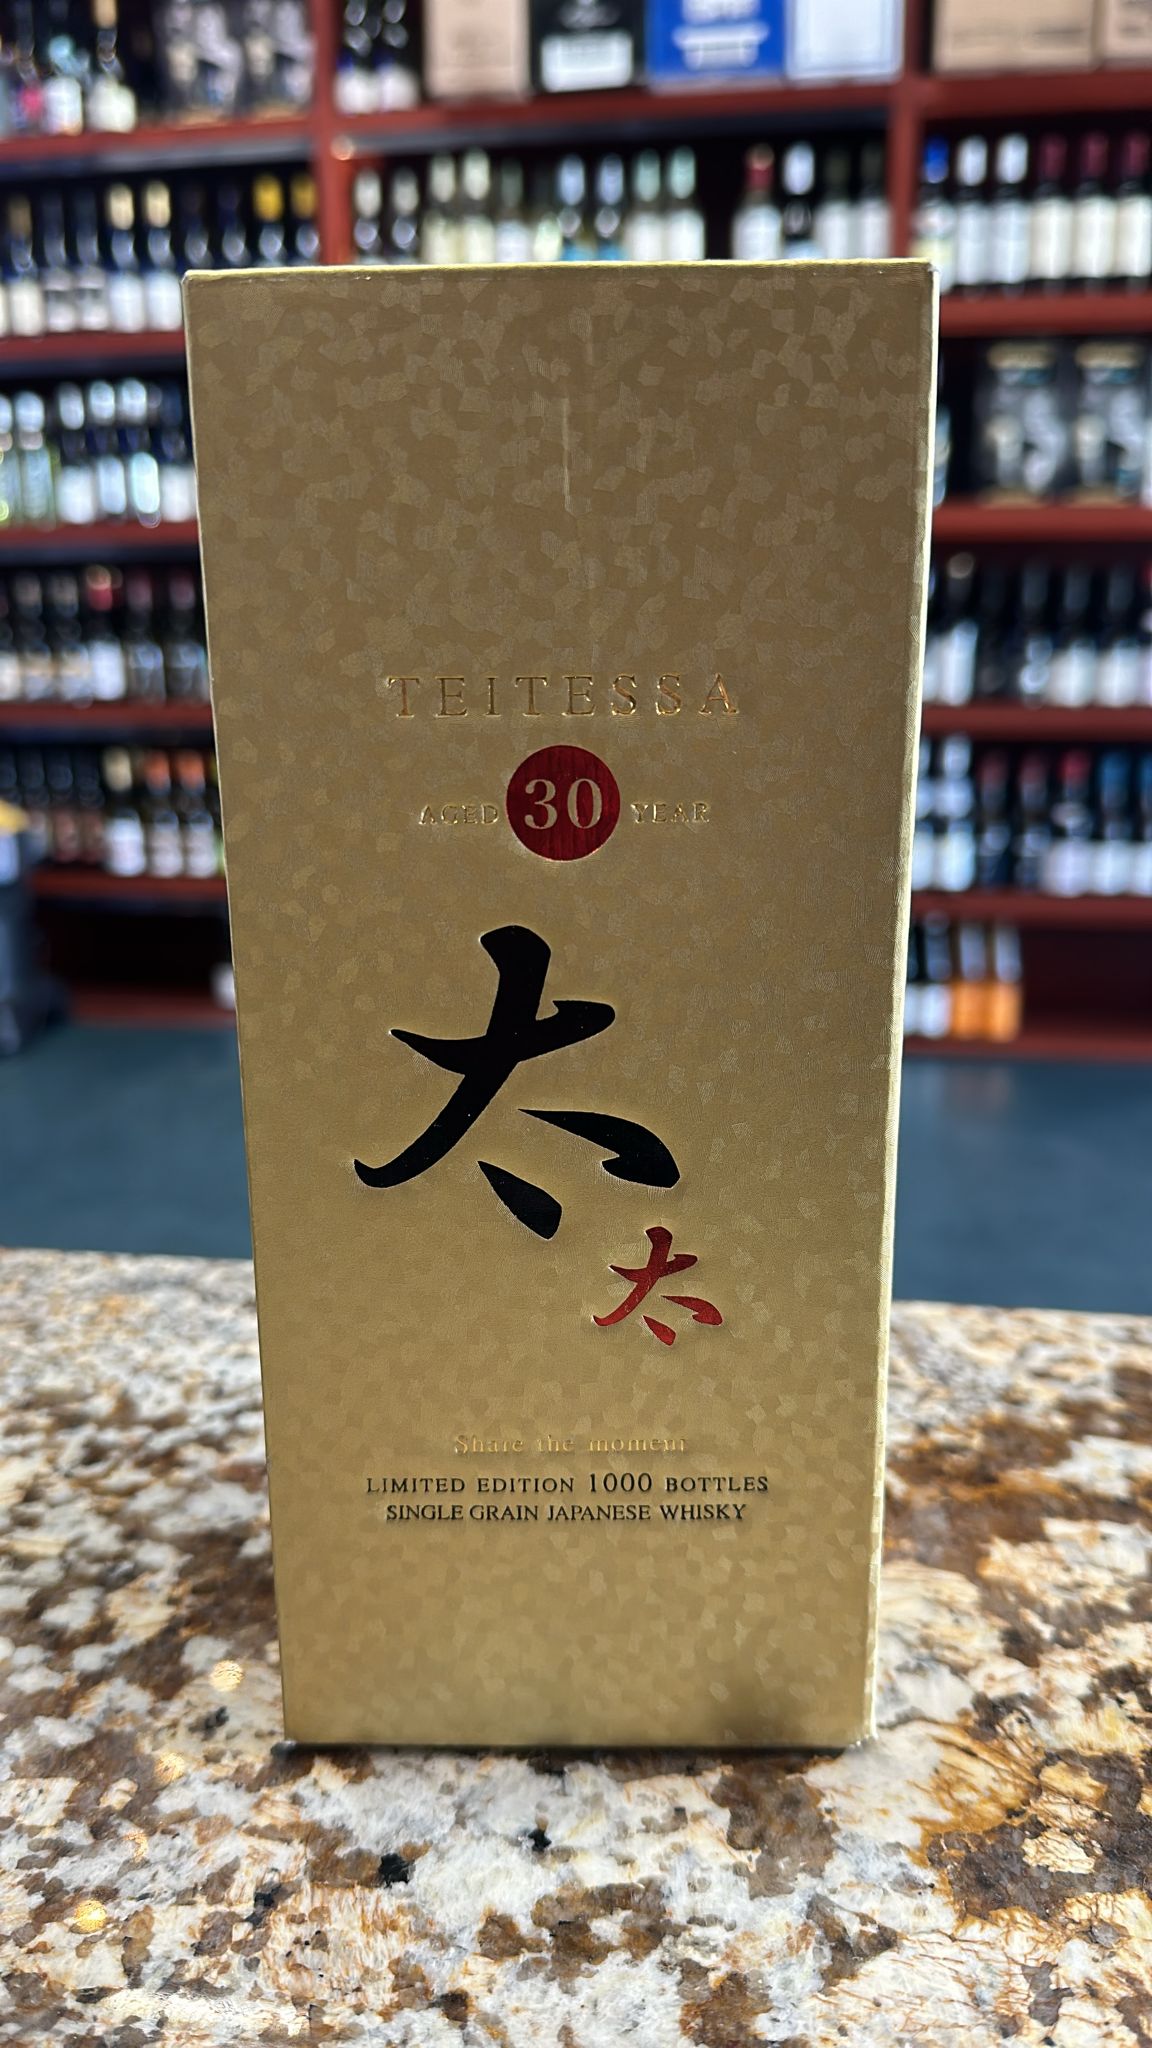 Teitessa 30 Year Old Single Grain Japanese Whisky 750ml